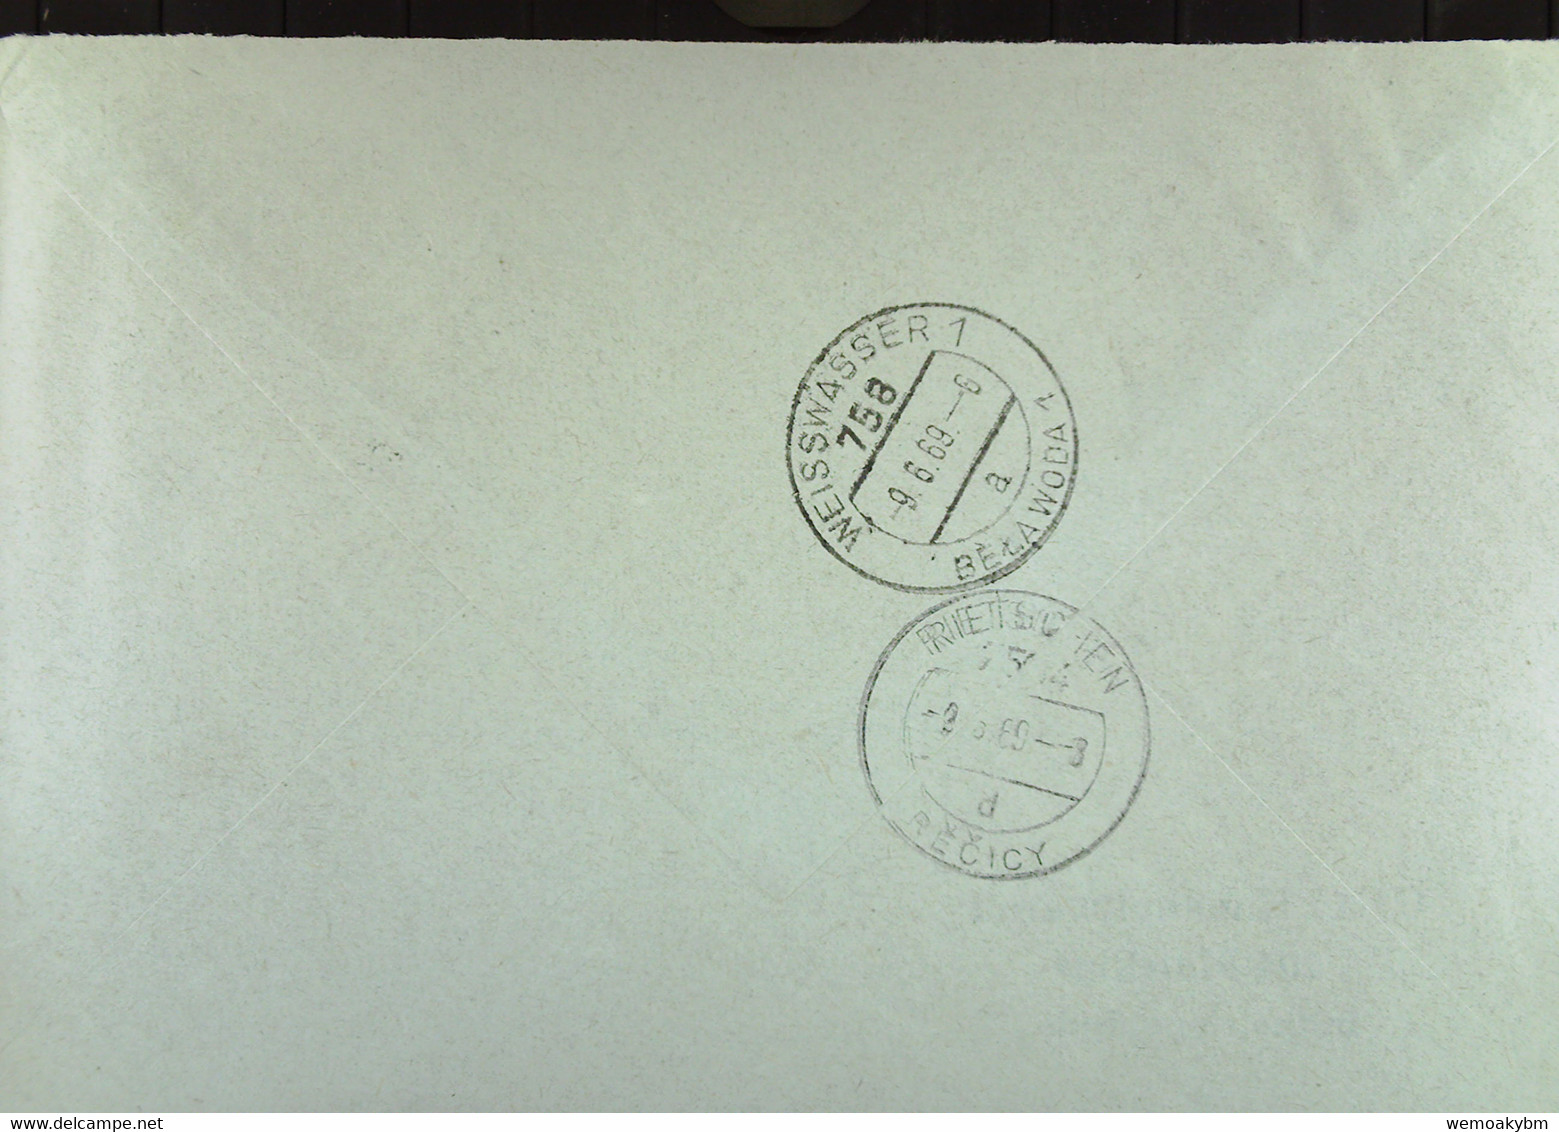 Fern-Brief Mit ZKD-Kastenstpl. "GHG Haushaltswaren 204 MALCHIN" 6.6.69 An Glaswerk Rietschen/RECICY Mit Eing-Stpl - Covers & Documents